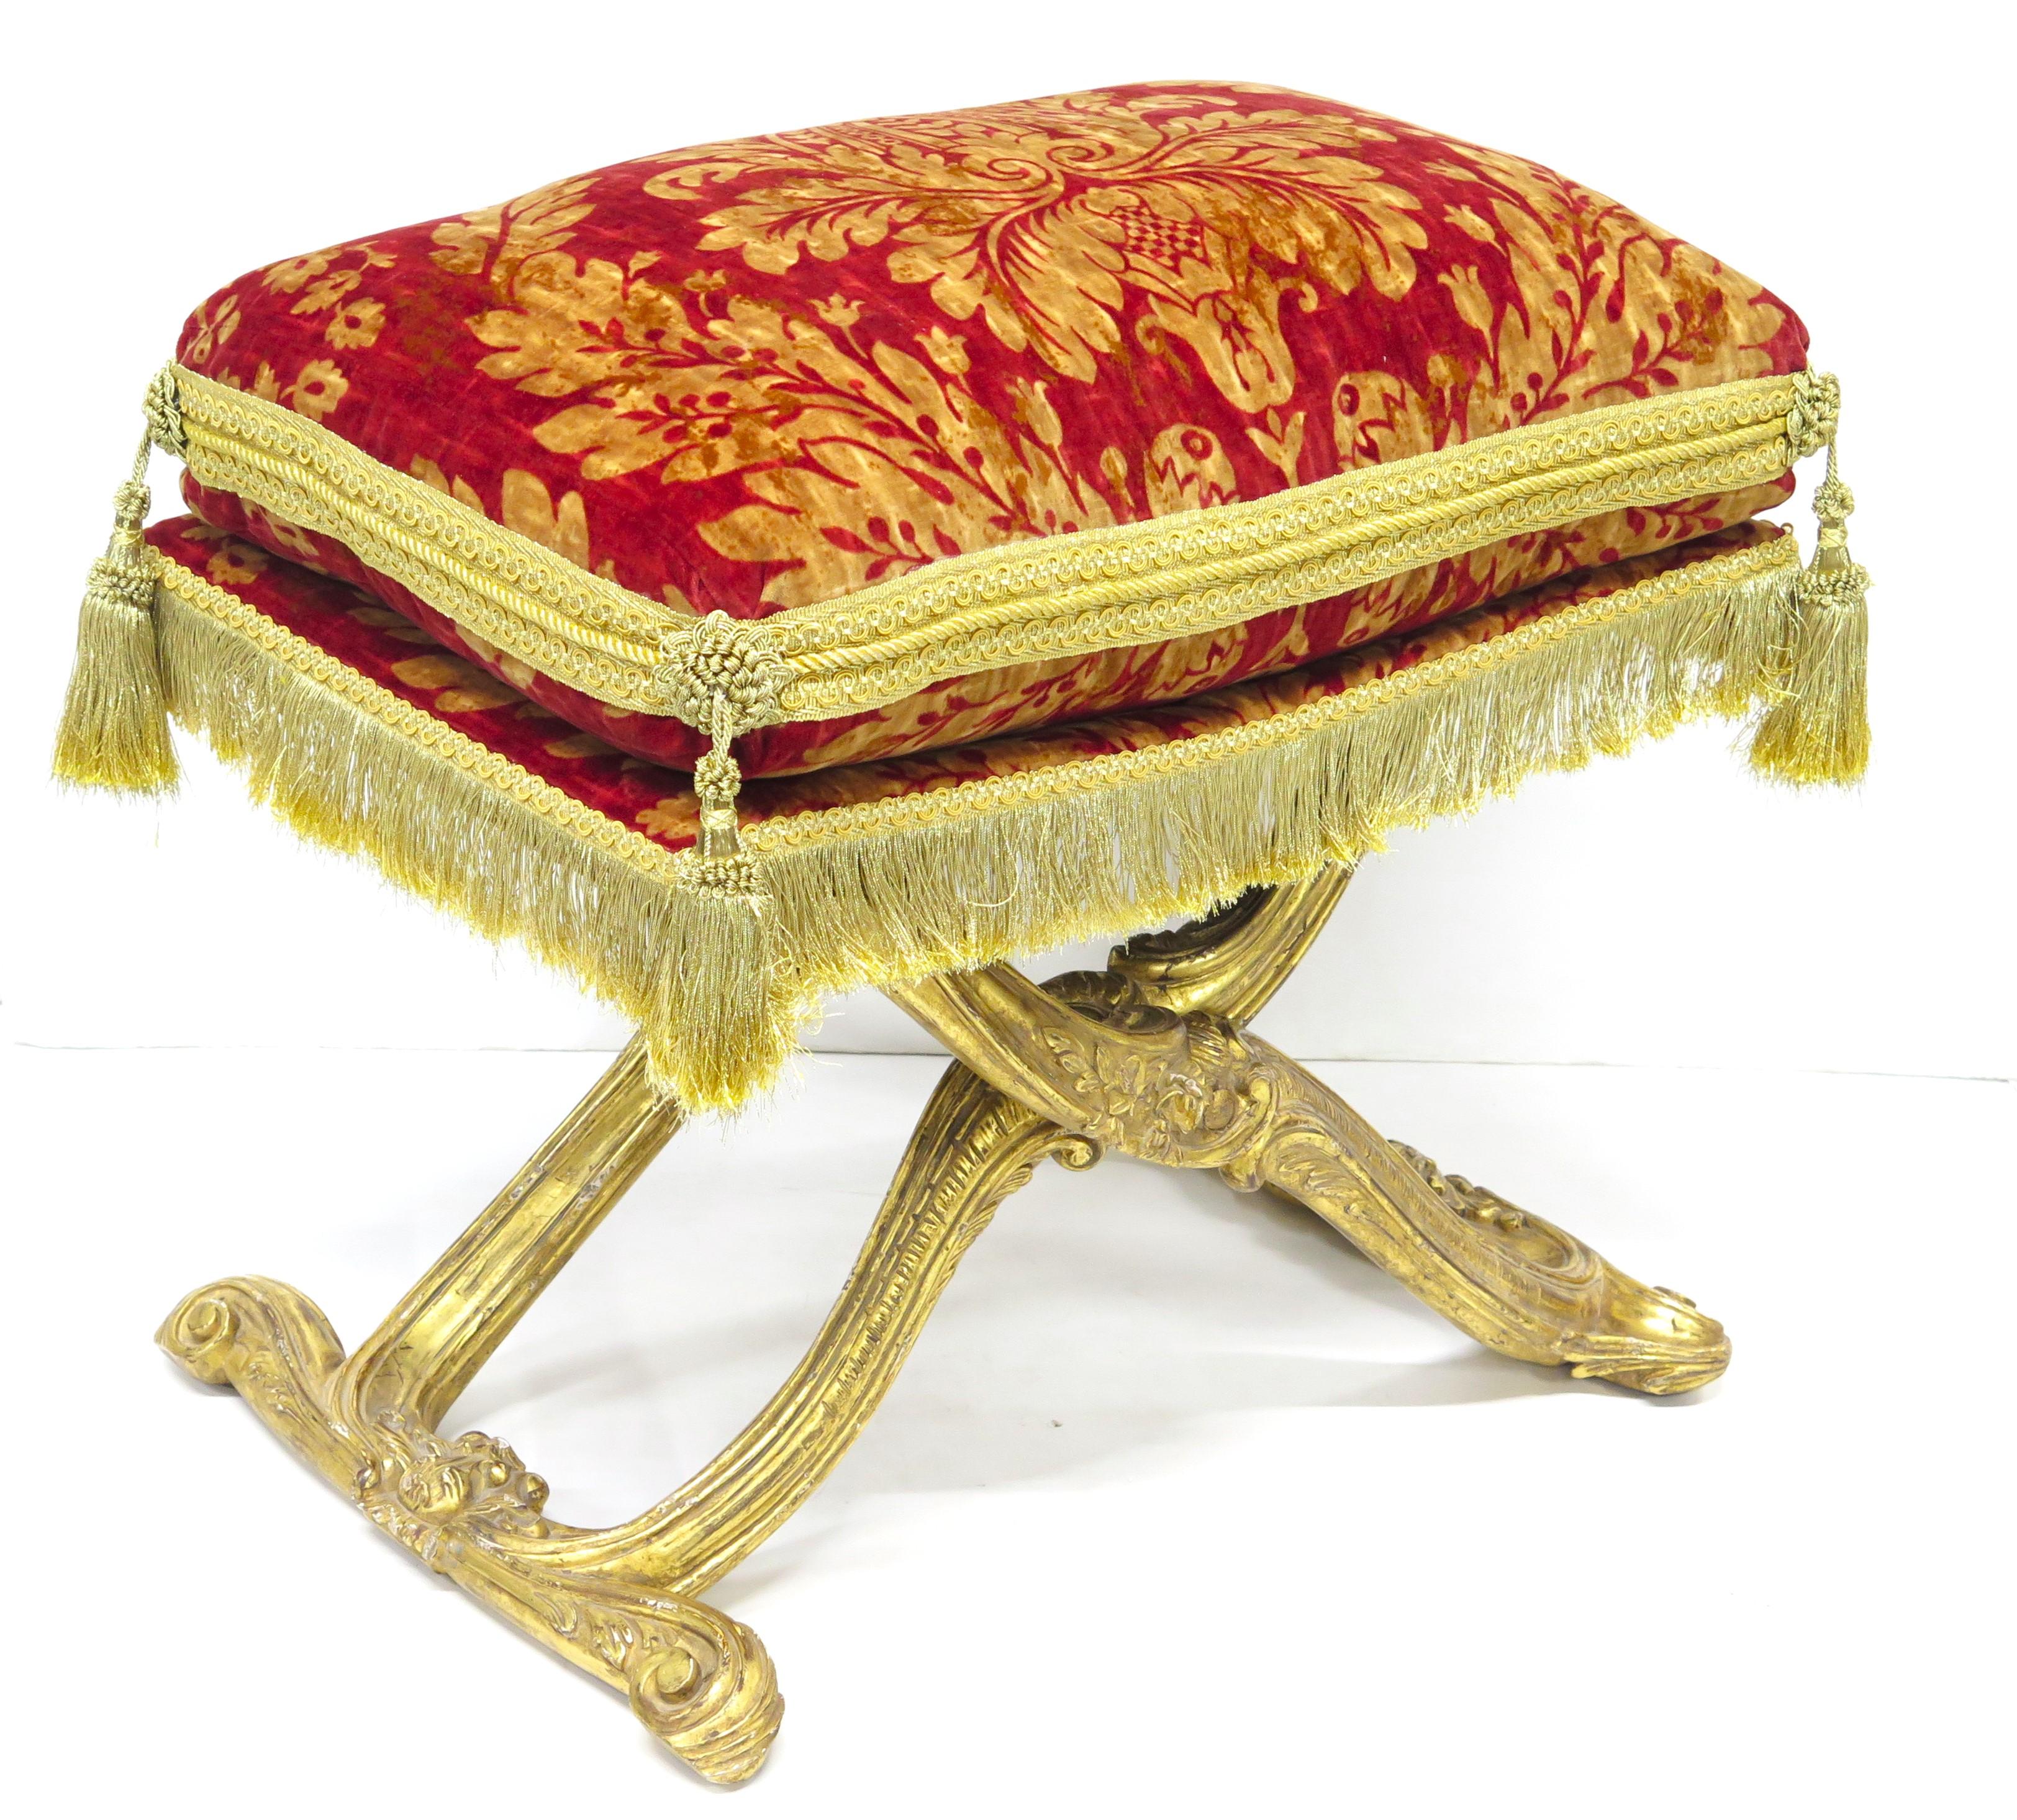 ein geschnitzter und vergoldeter X-förmiger Klapphocker / Curule-Sitz im Louis XV-Stil mit einem prallen, rot und gold bedruckten Damastkissen / -kissen mit aufwendigen Passementarie-Verzierungen wie Goldborte, Kordel, Posamenten, Goldfransen und